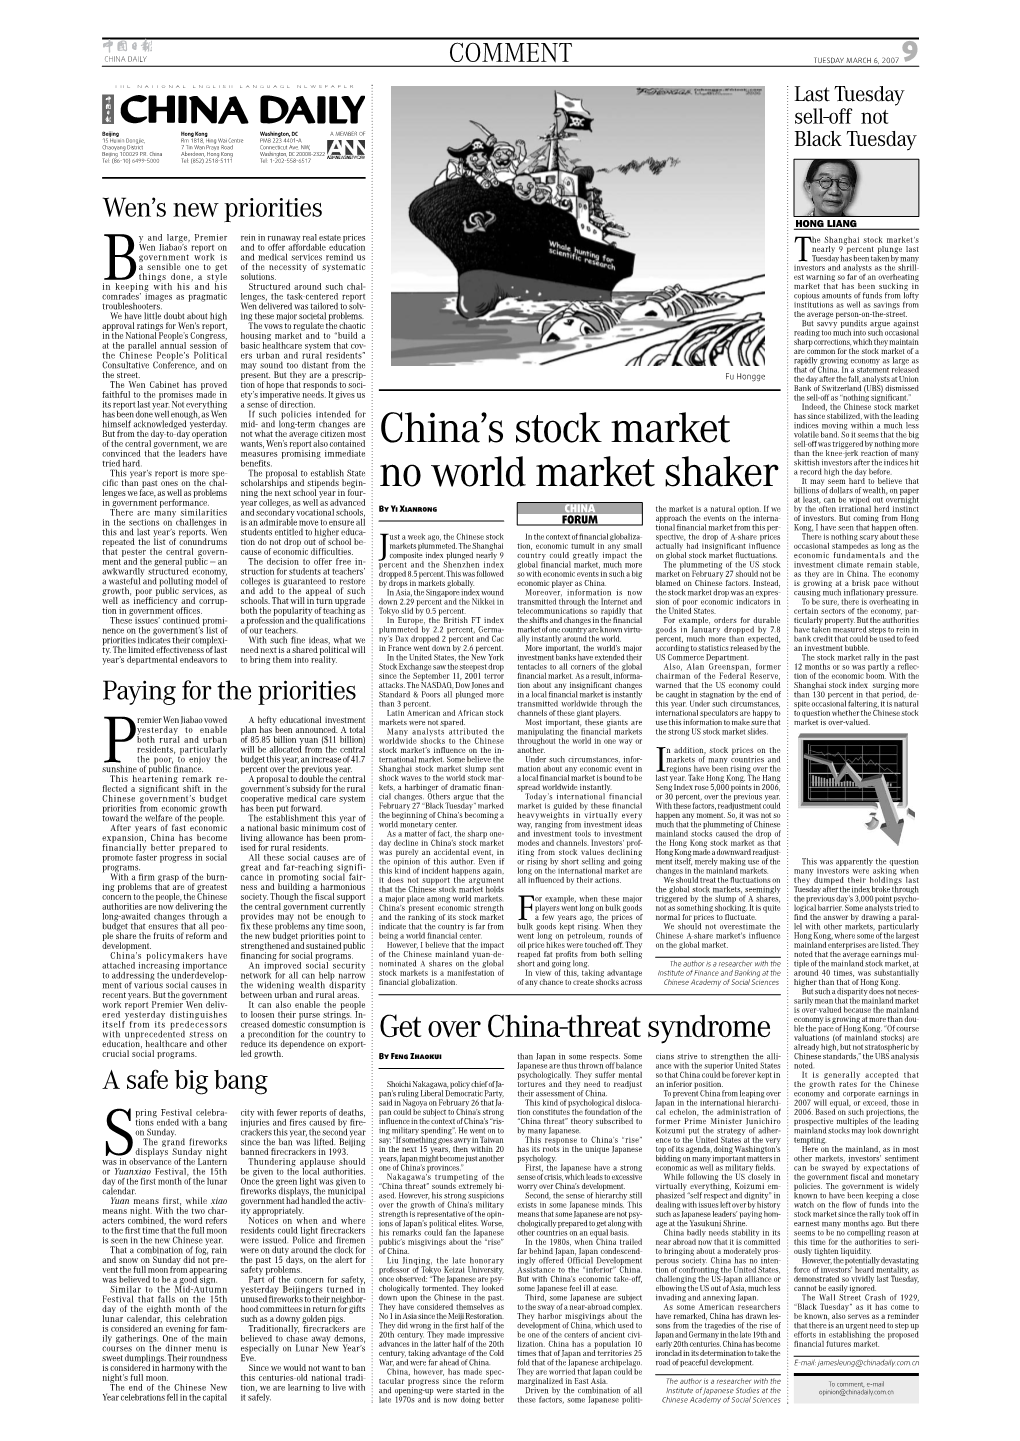 China's Stock Market No World Market Shaker